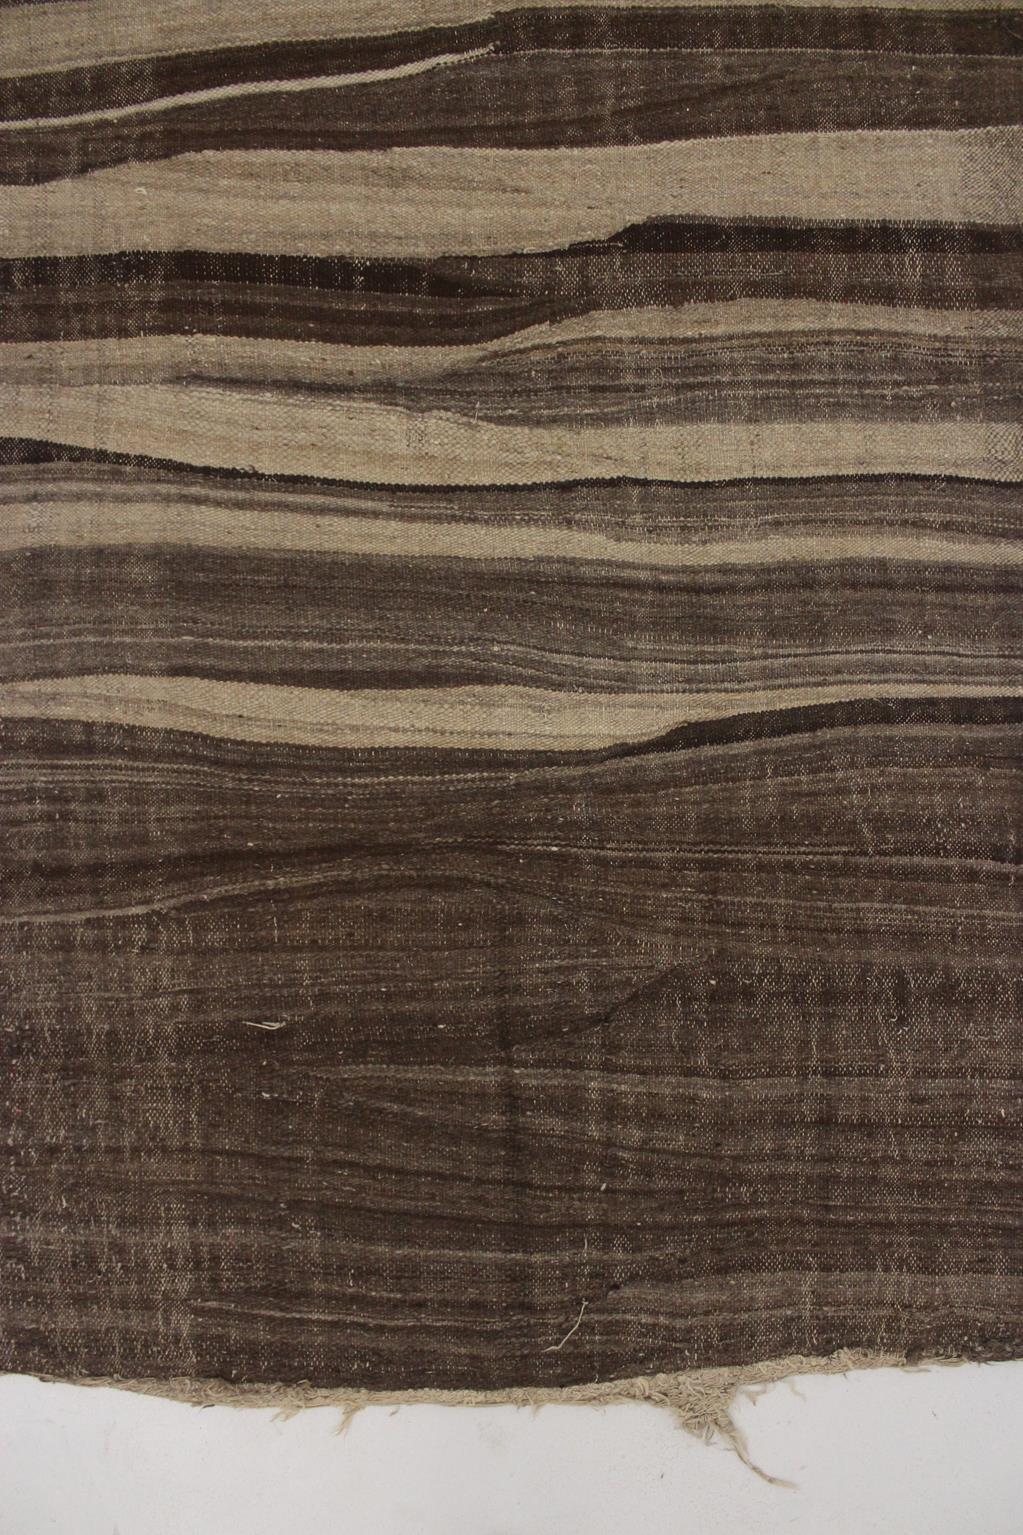 Wool Vintage Moroccan Kilim rug - Stripes in beige+brown - 4.6x14.4feet / 142x440cm For Sale